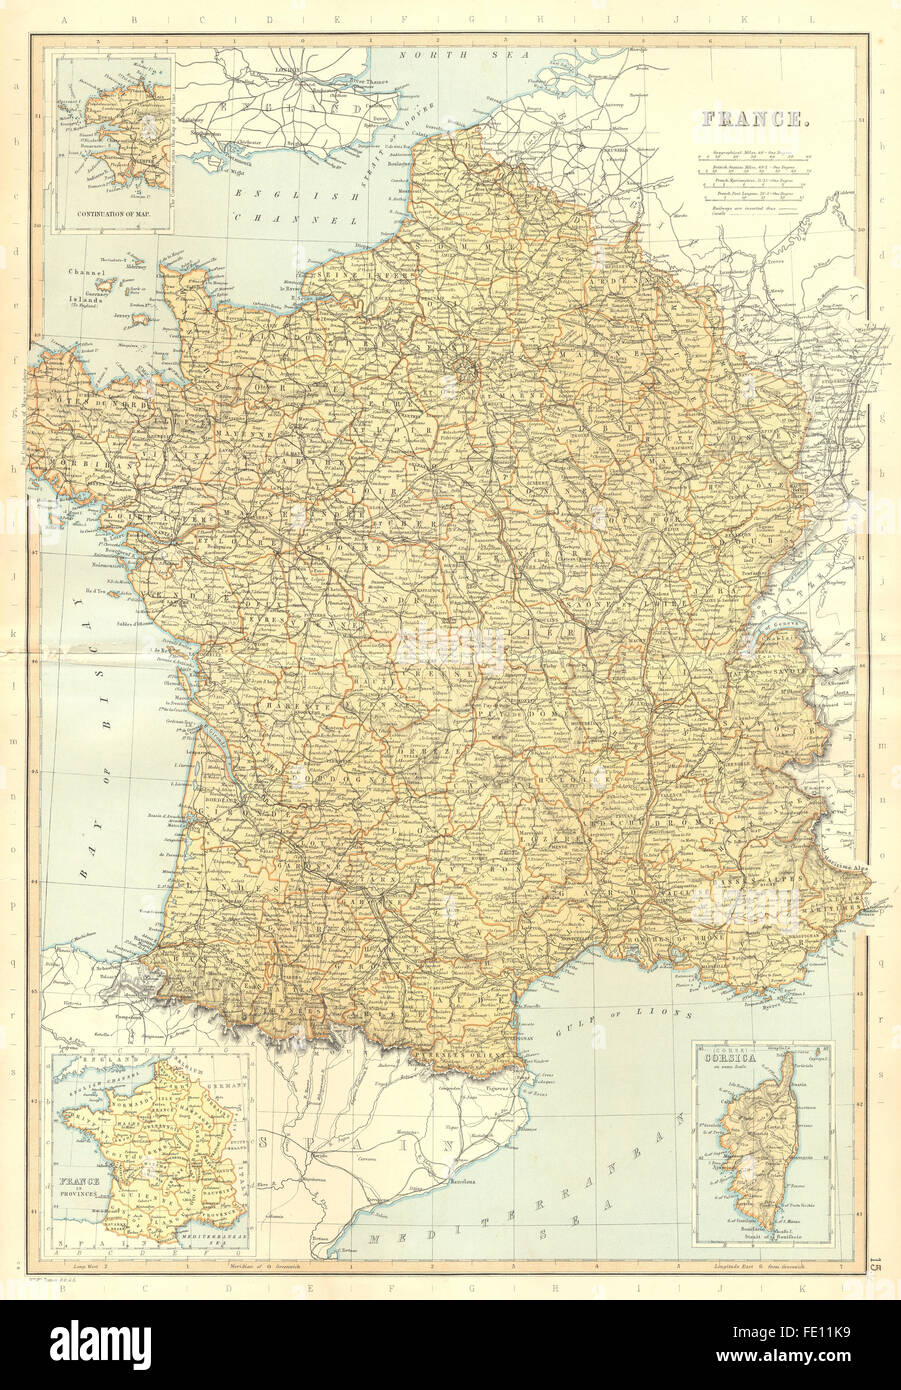 FRANCE : les canaux de fer les ministères. En médaillon, dans les provinces. BLACKIE, 1893 map Banque D'Images